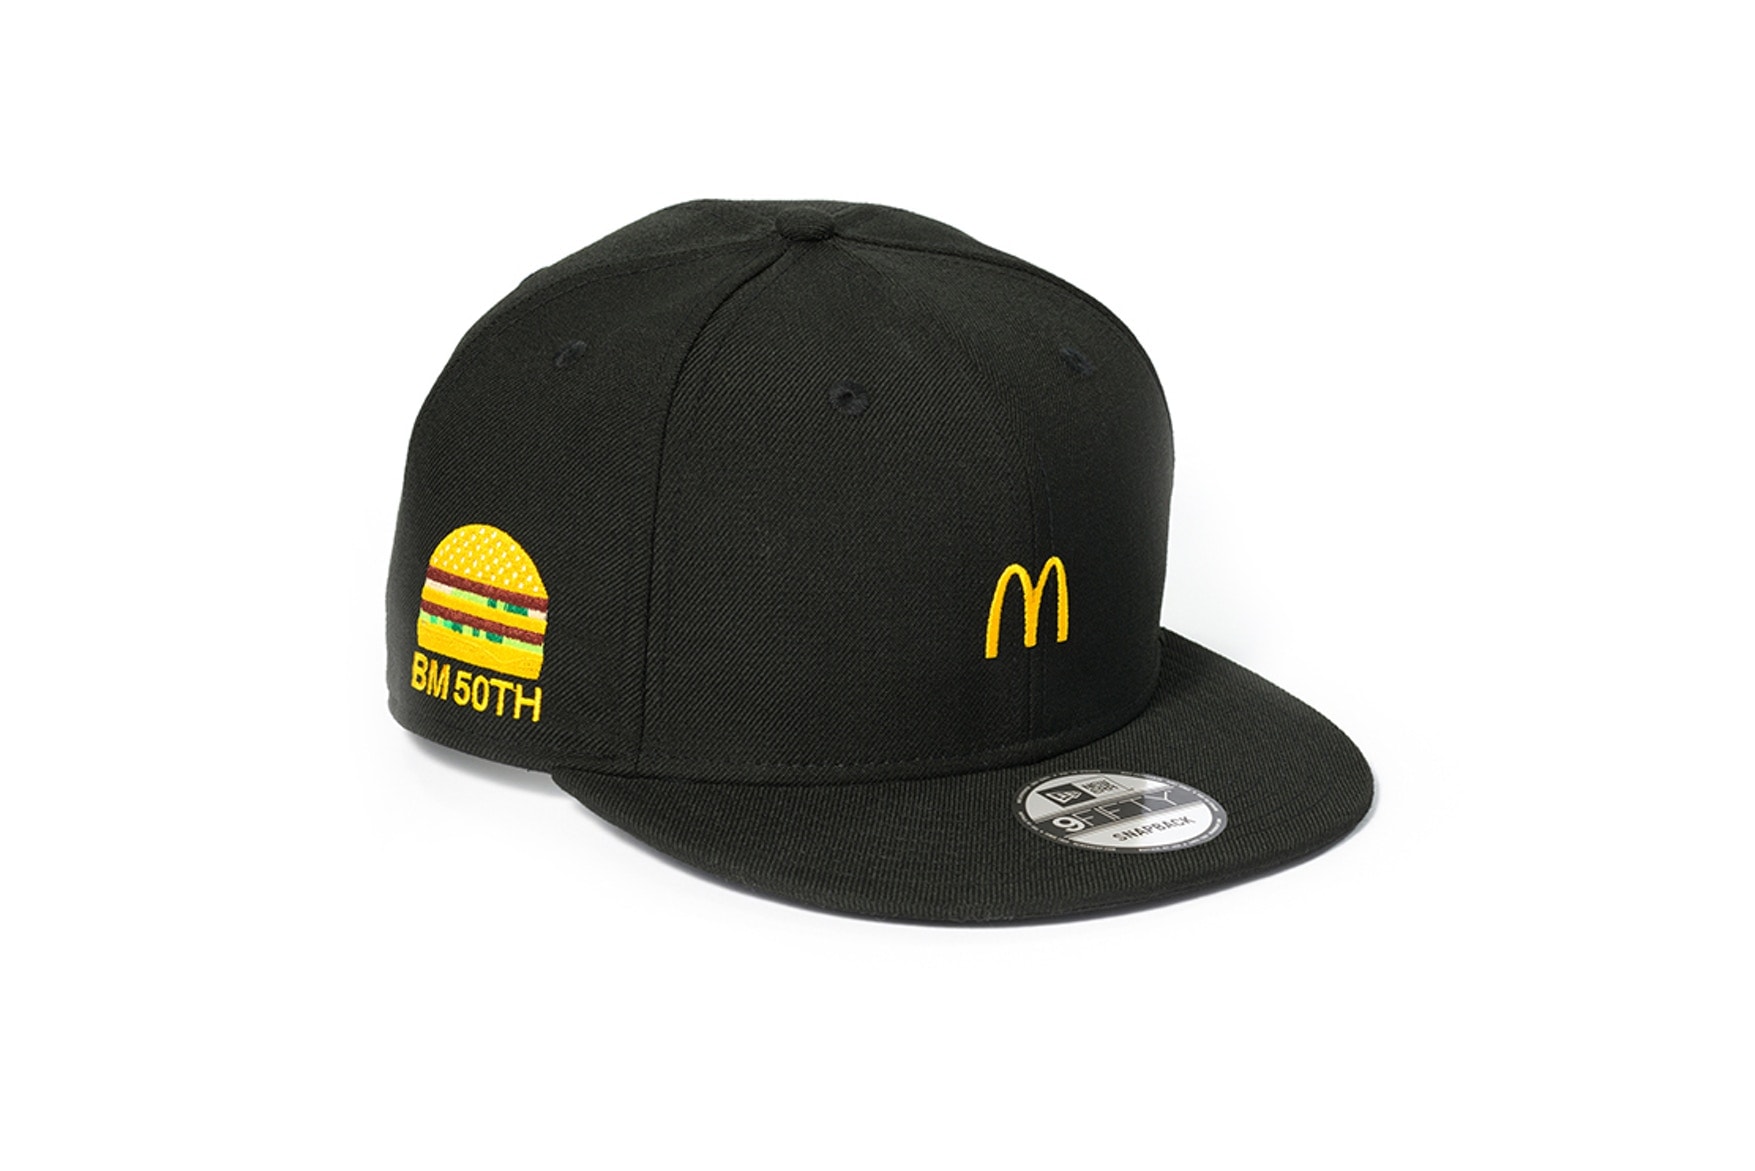 McDonald's 與 G-SHOCK 及 New Era 推出聯名單品